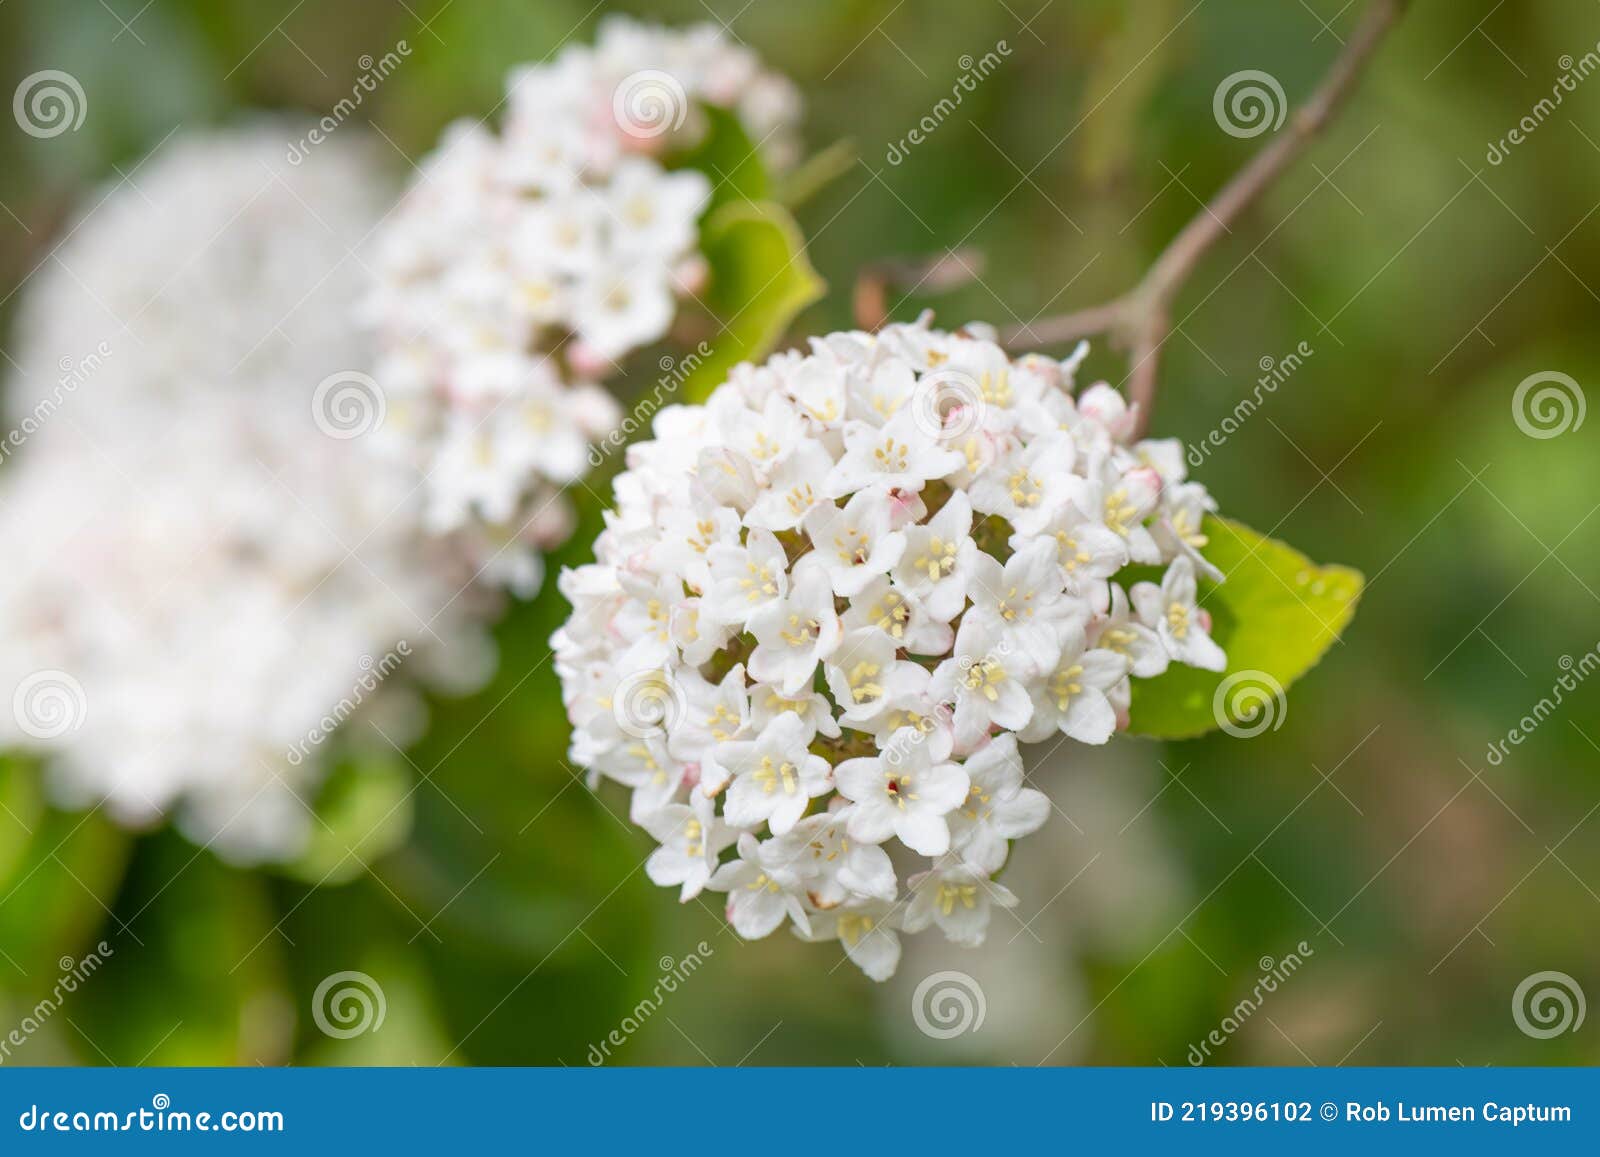 burkwood viburnum burkwoodii, fragrant white flowers